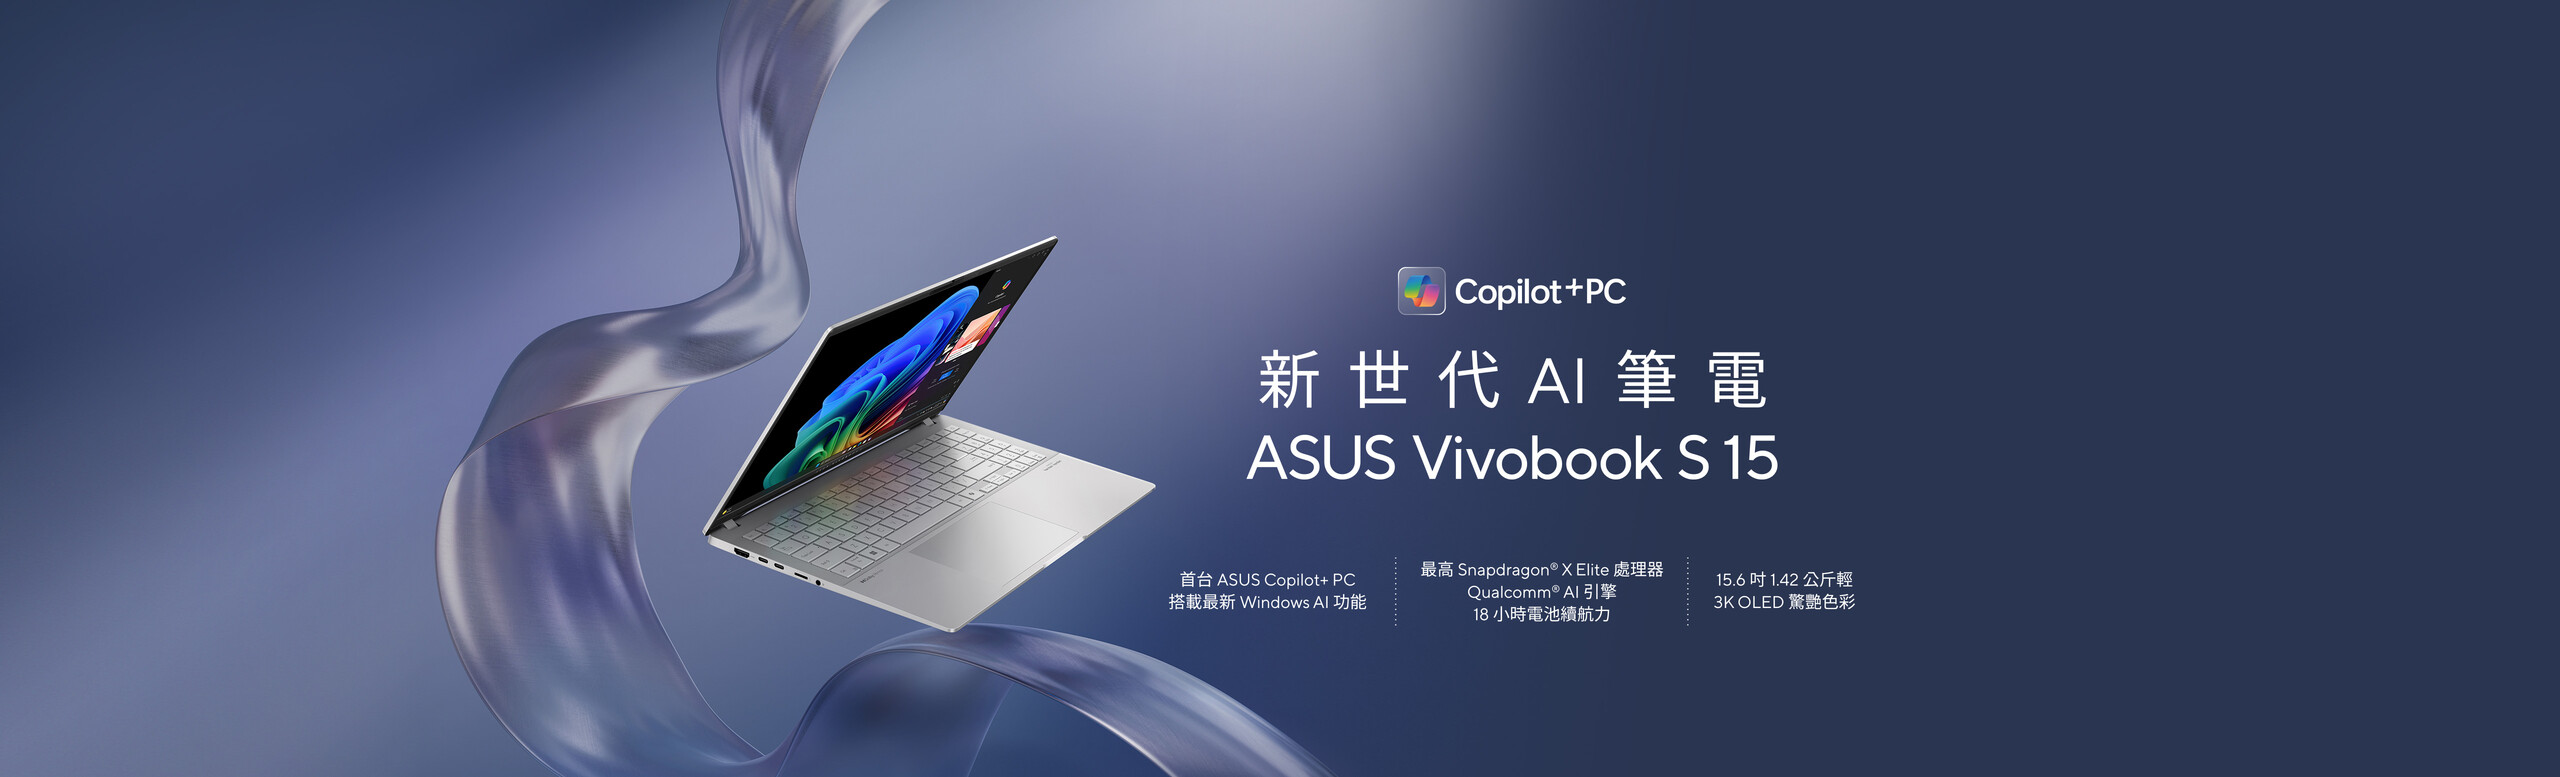 新世代 AI 筆電 ASUS Vivobook S 15